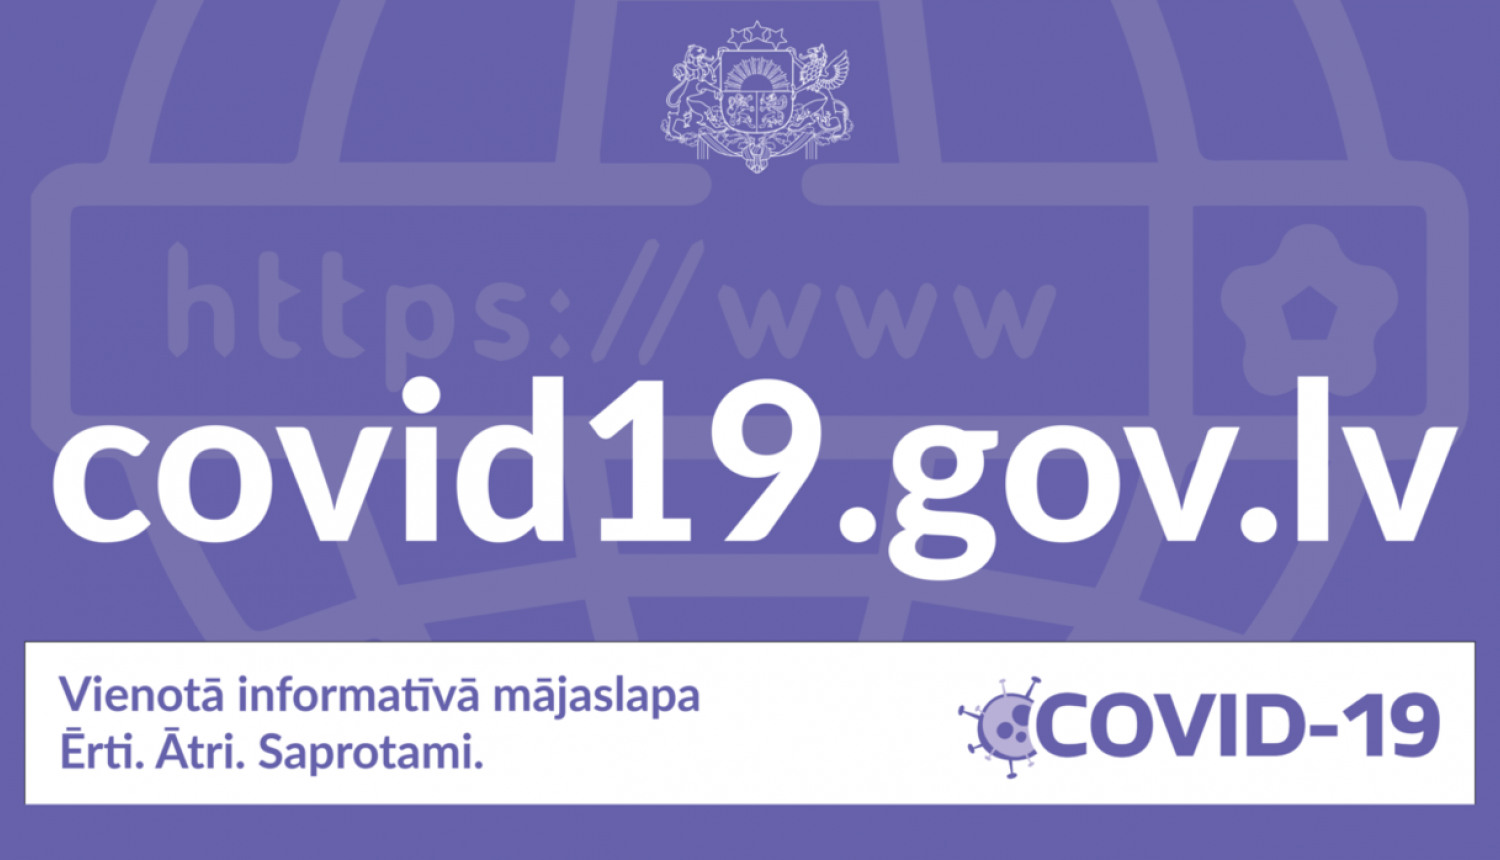 Vietnē covid19.gov.lv vienuviet būs pieejama aktuālā informācija par Covid-19